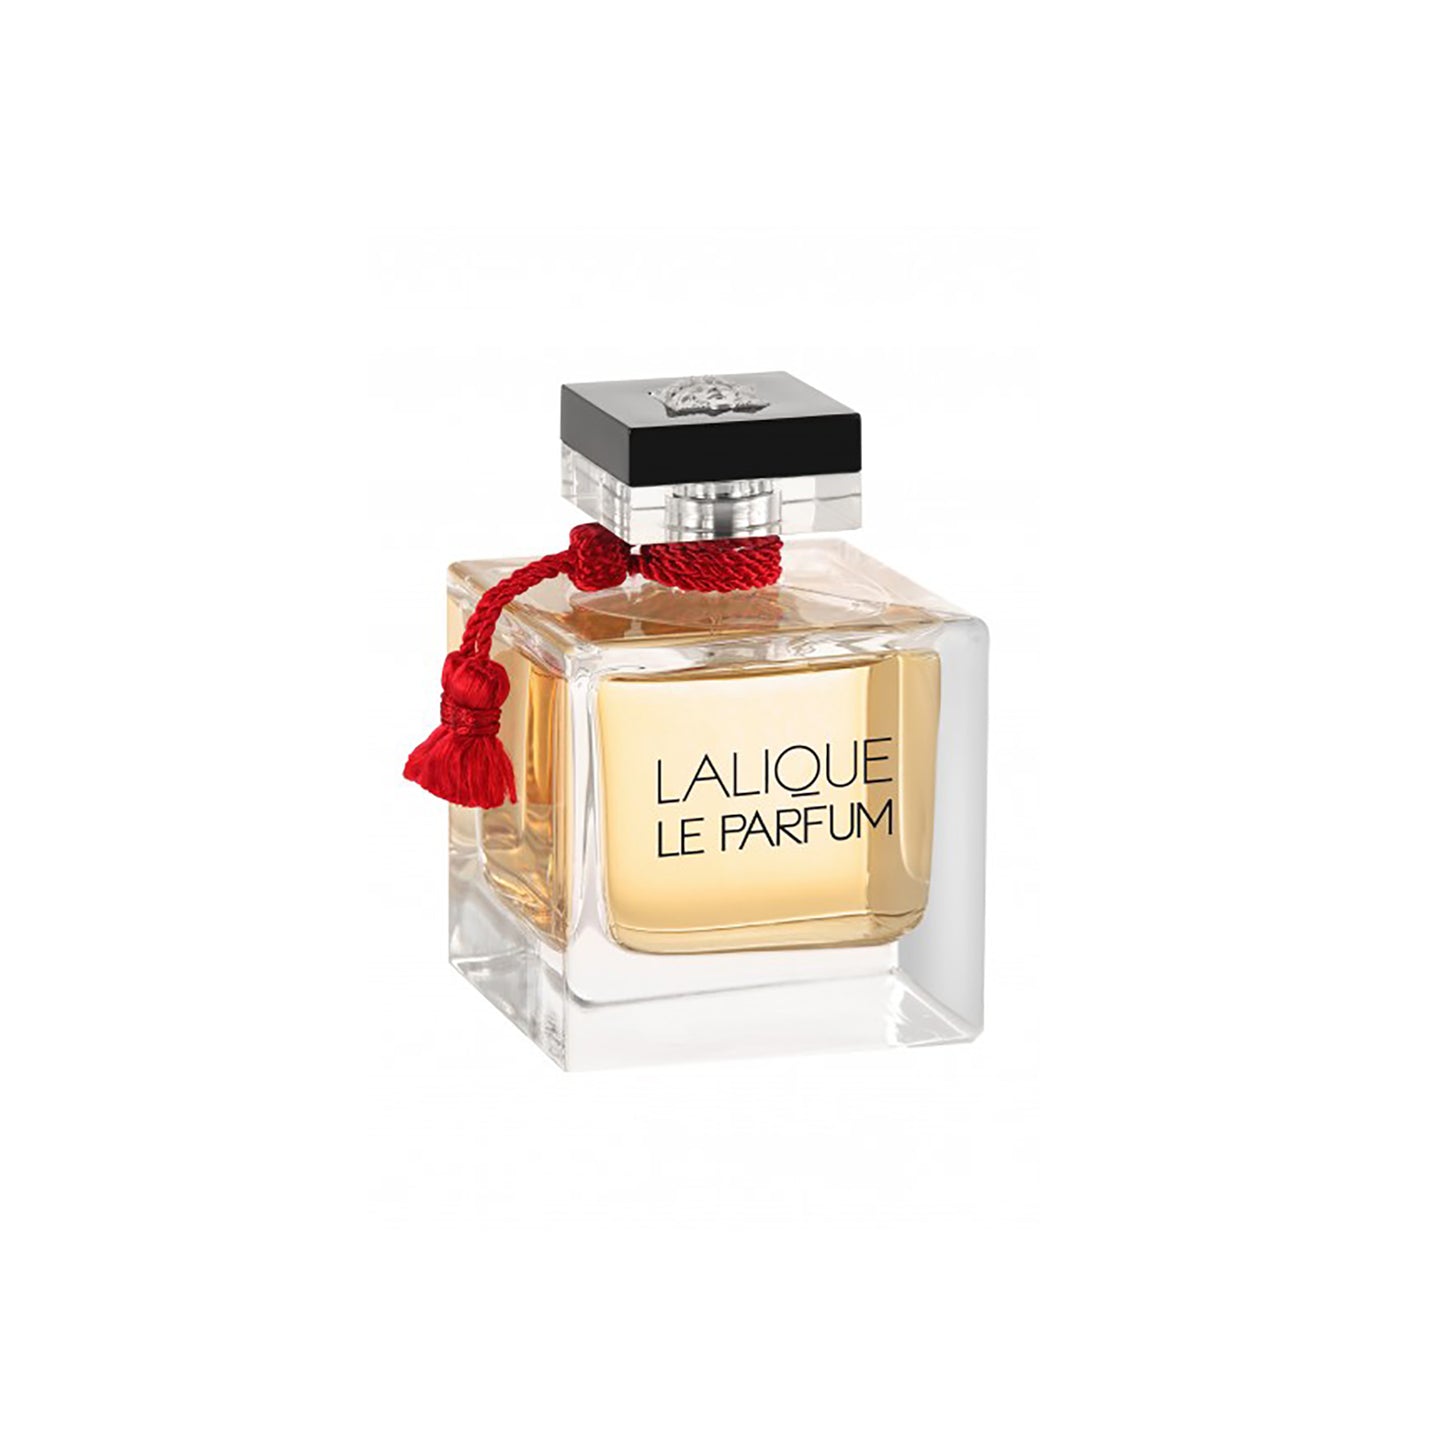 Lalique Le Parfum 3.3 oz Eau de Parfum